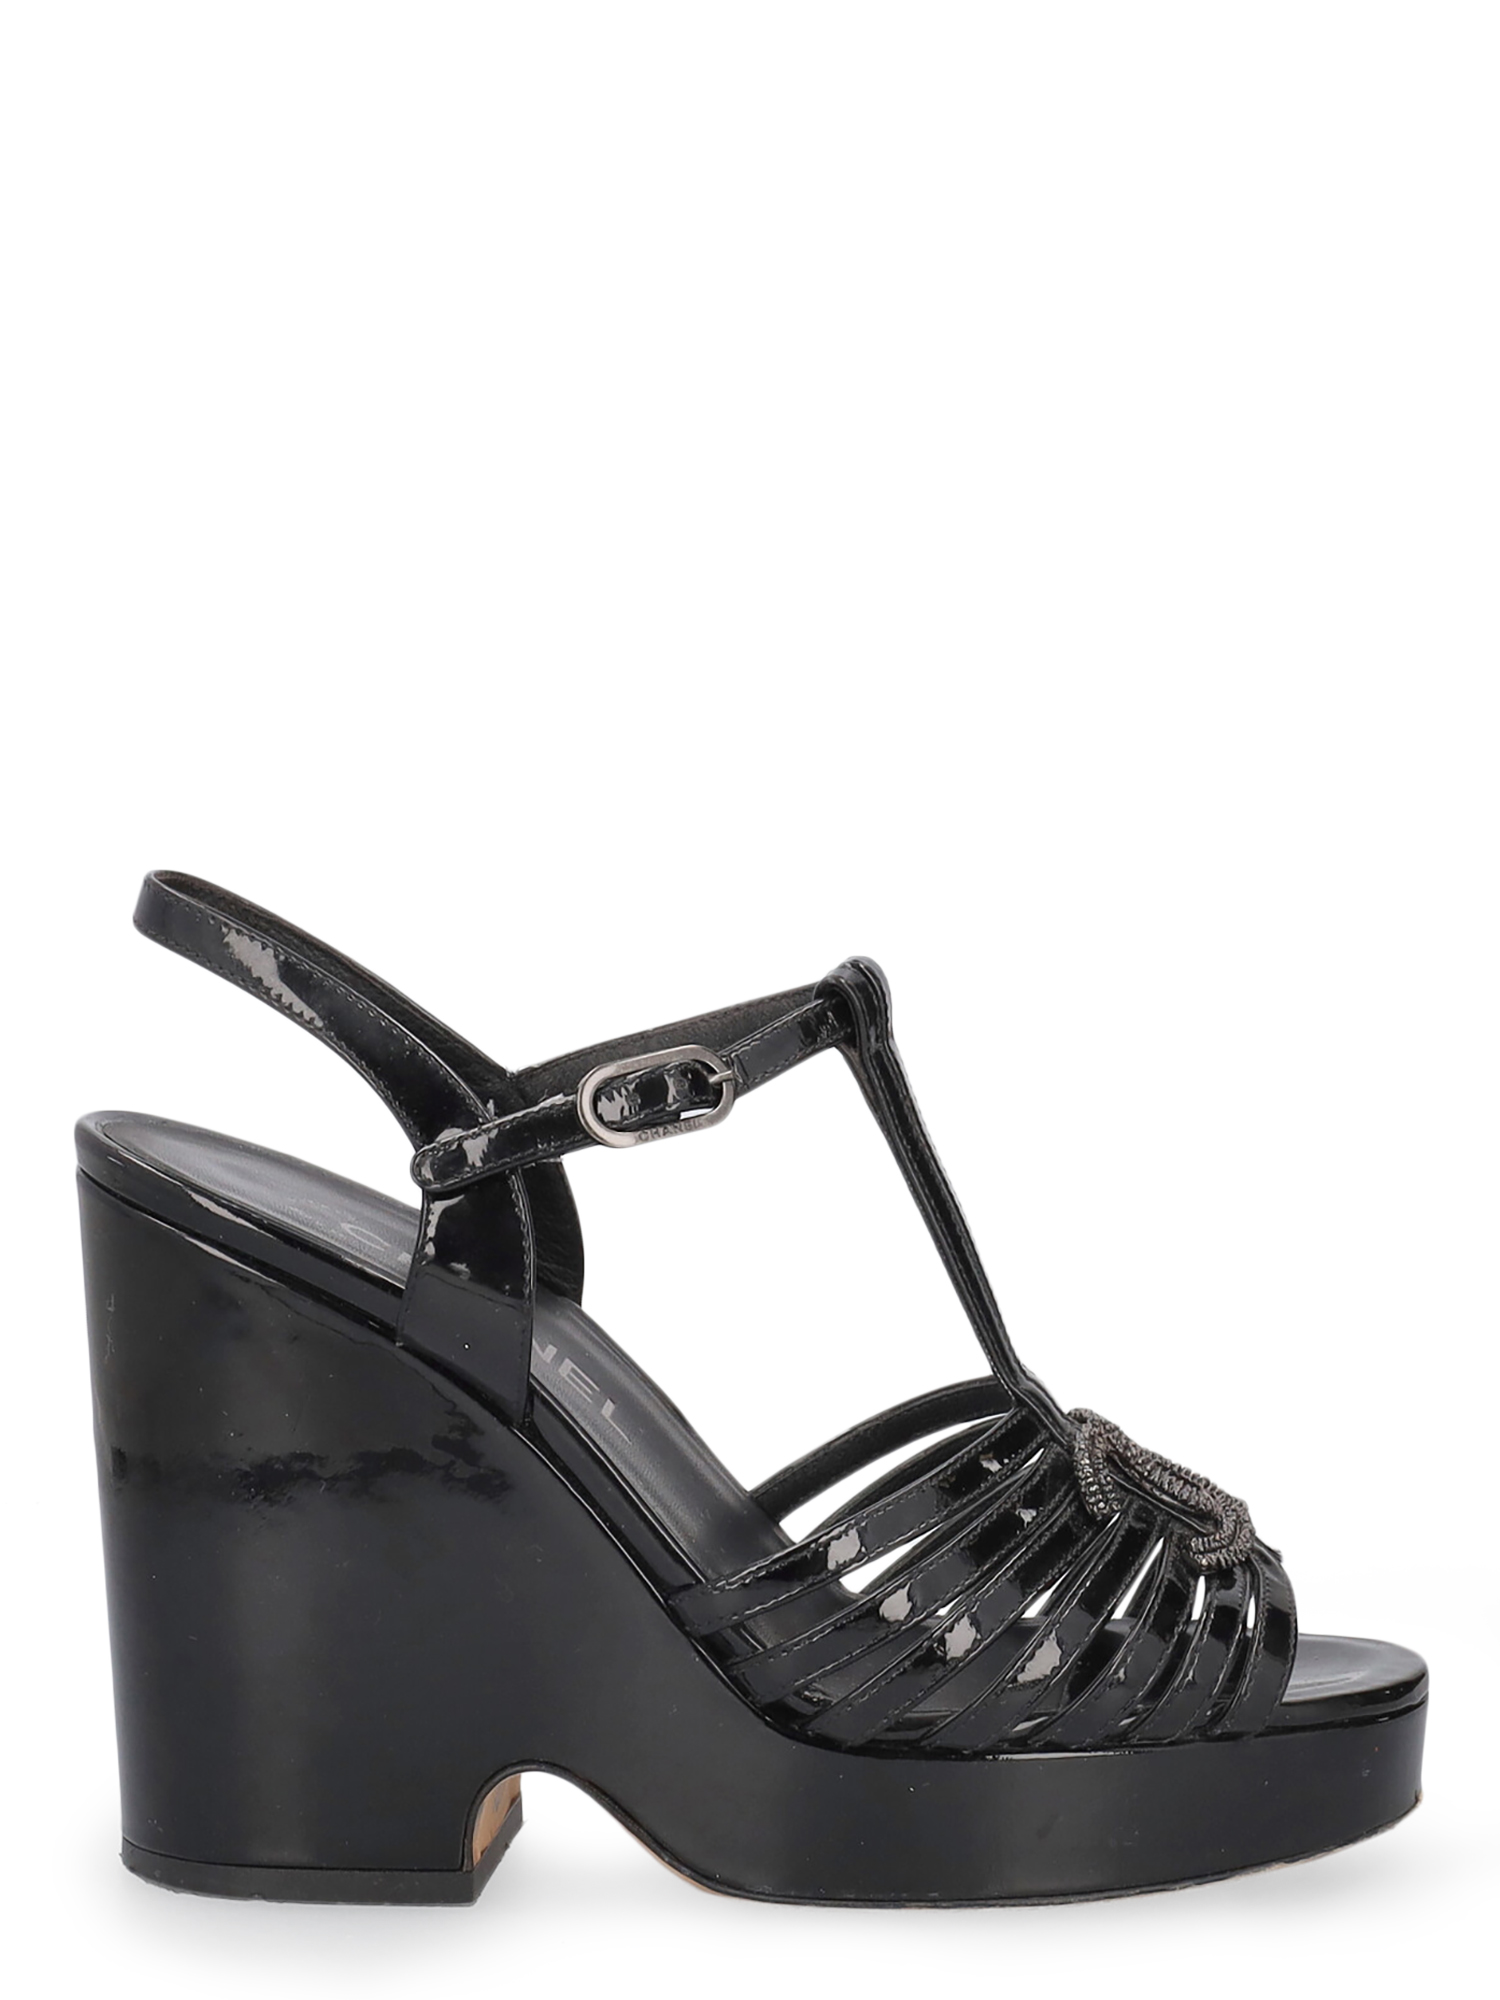 Chaussures À Semelle Compensée Pour Femme - Chanel - En Leather Black - Taille: IT 36.5 - EU 36.5